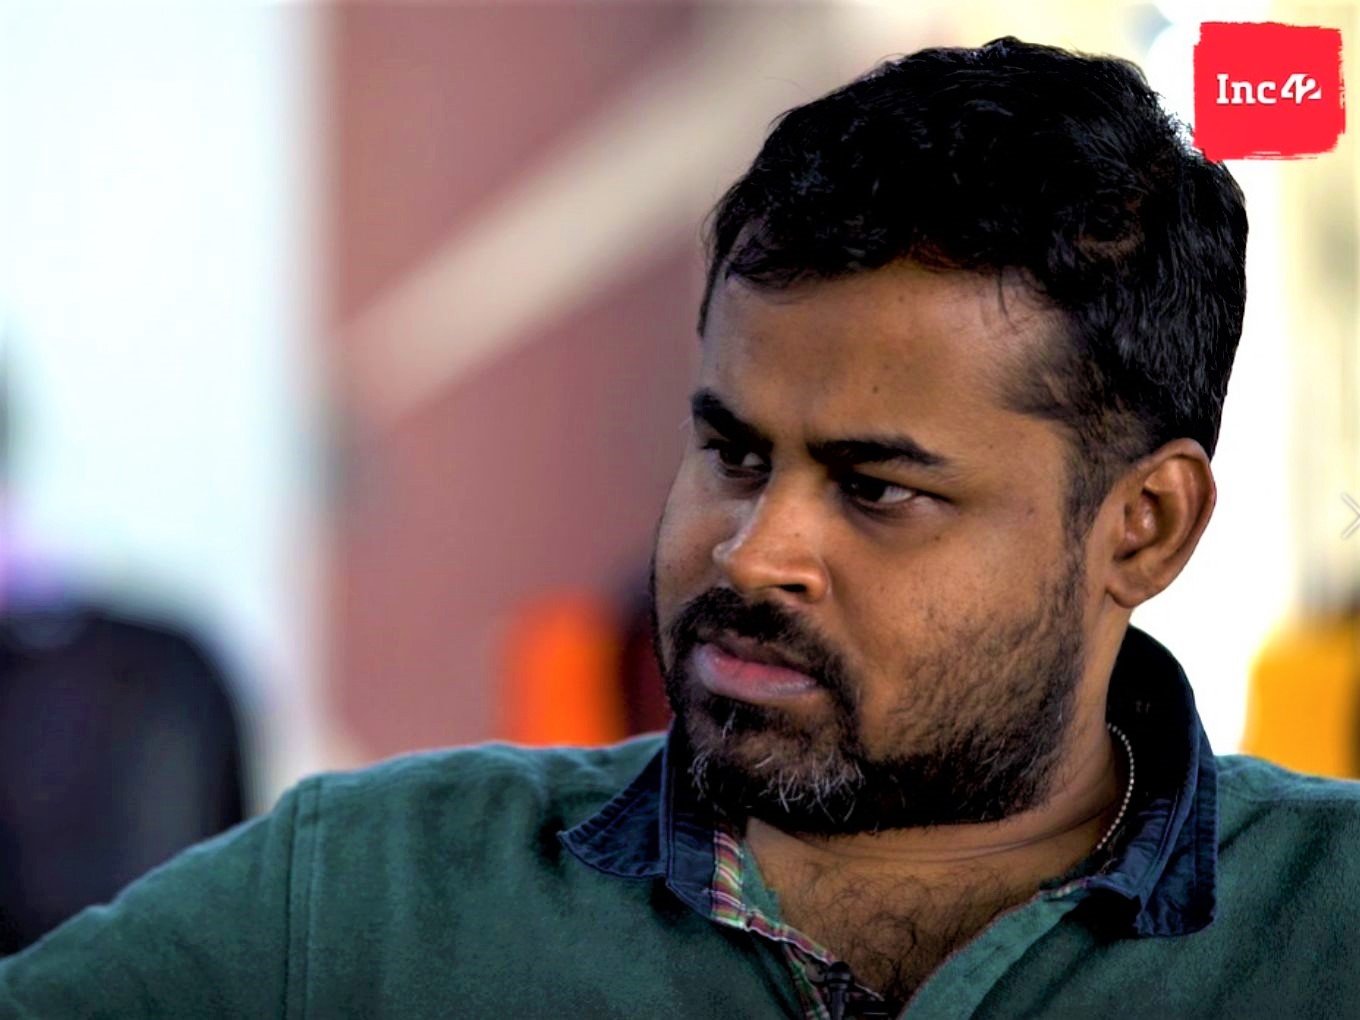 NinjaCart founder Thirukumaran explains the workings of the startup